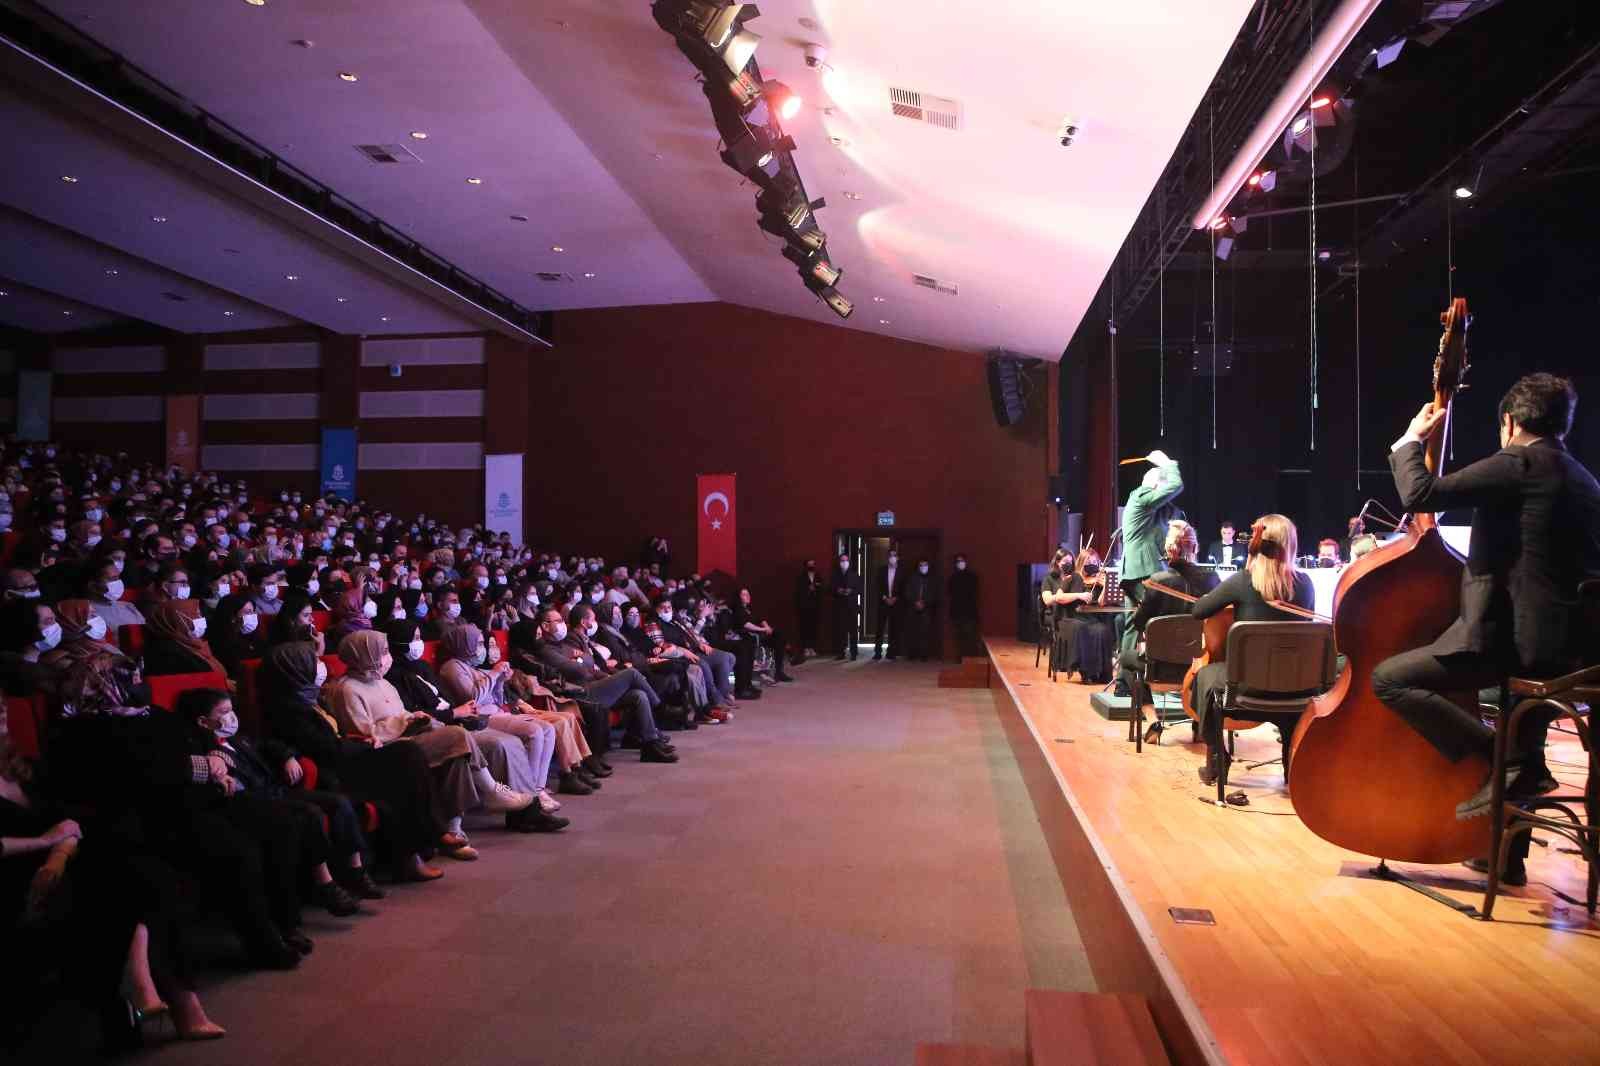 Sinema senfoni orkestrası Başakşehir’de sahne aldı #istanbul